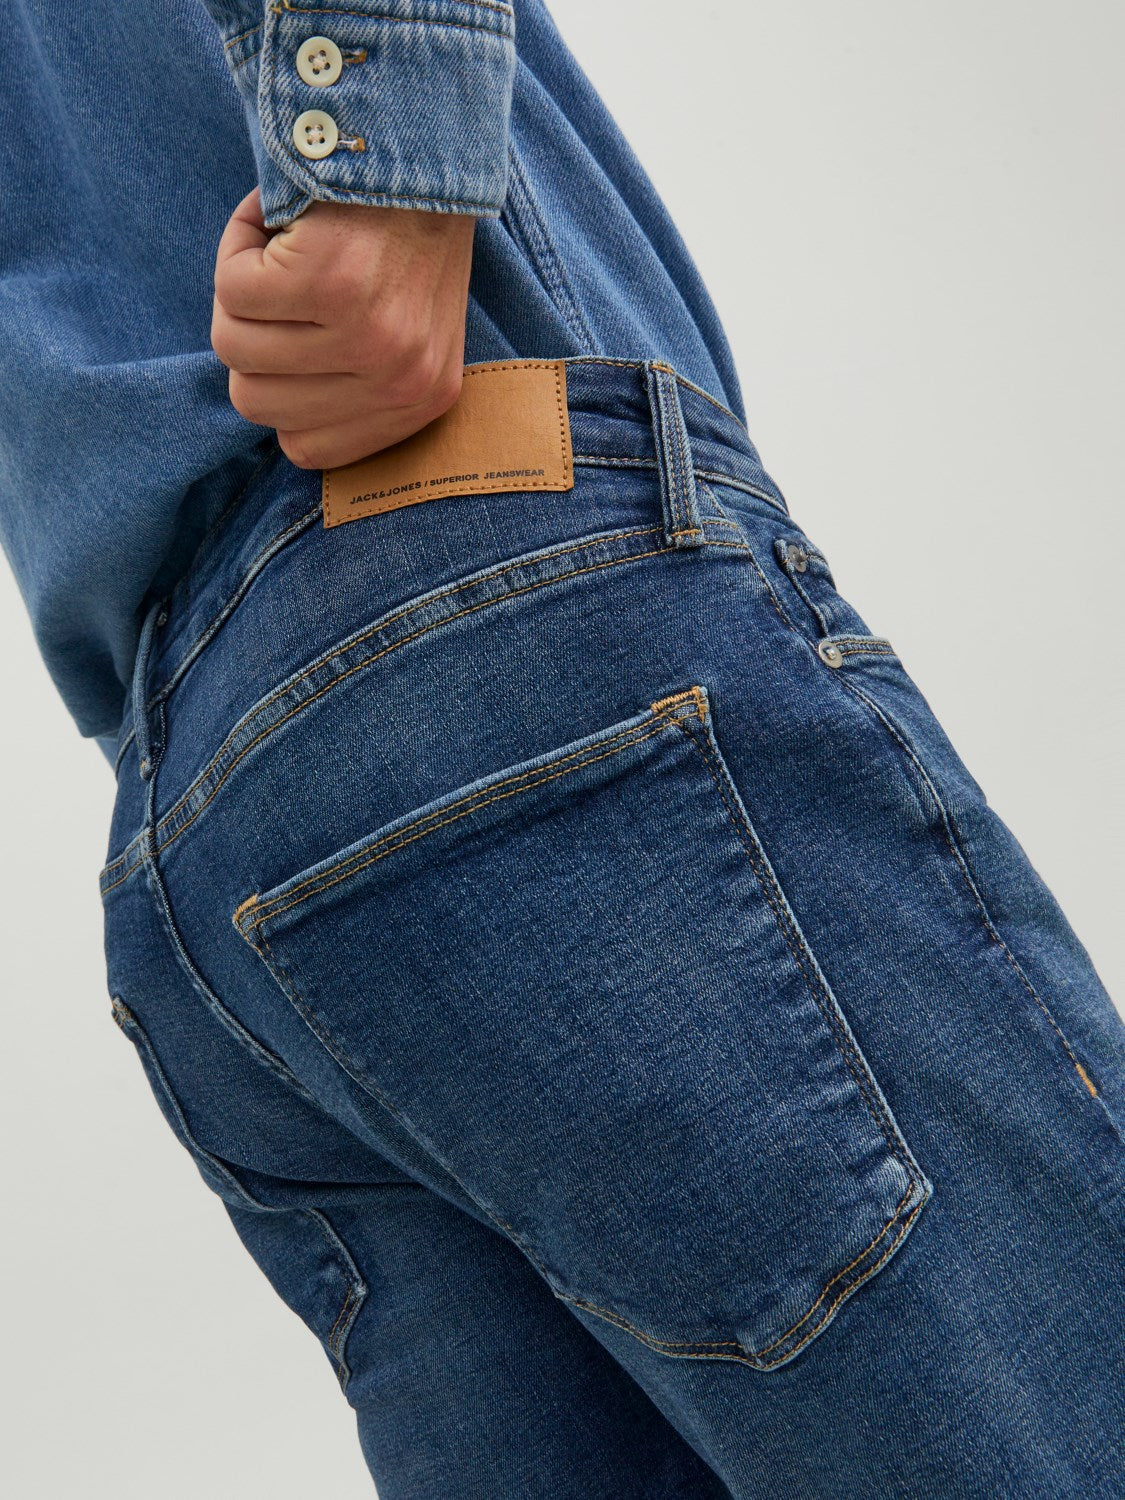 Clark 298 Blue Regular Fit Jean-Back pocket detail